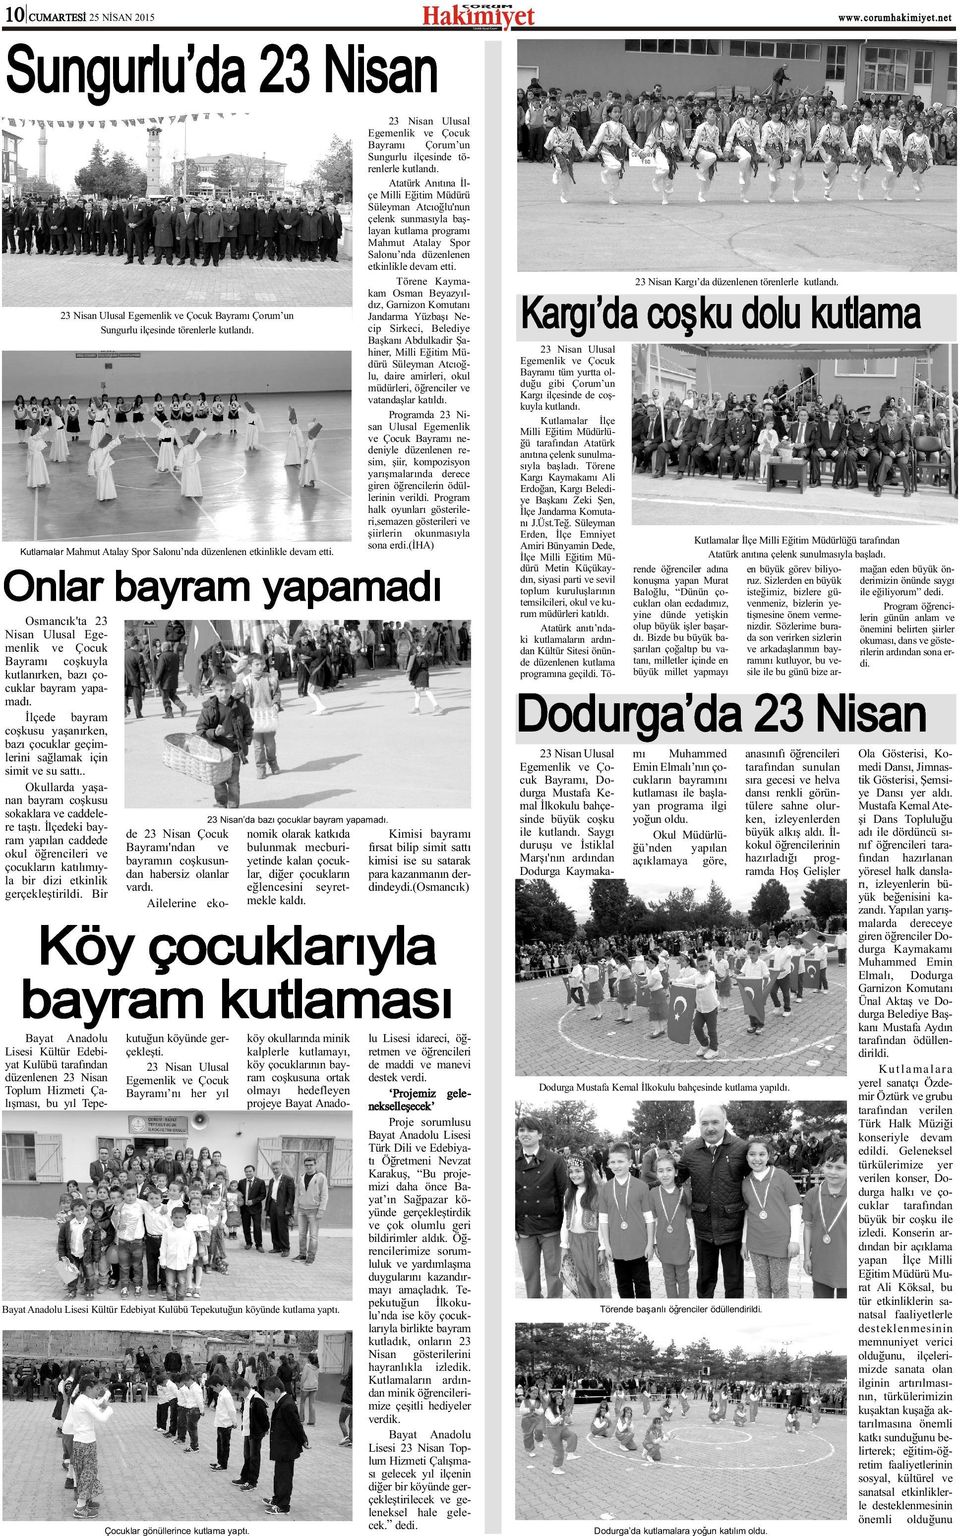 Atatürk Anýtýna Ýlçe Milli Eðitim Müdürü Süleyman Atcýoðlu'nun çelenk sunmasýyla baþlayan kutlama programý Mahmut Atalay Spor Salonu nda düzenlenen etkinlikle devam etti.